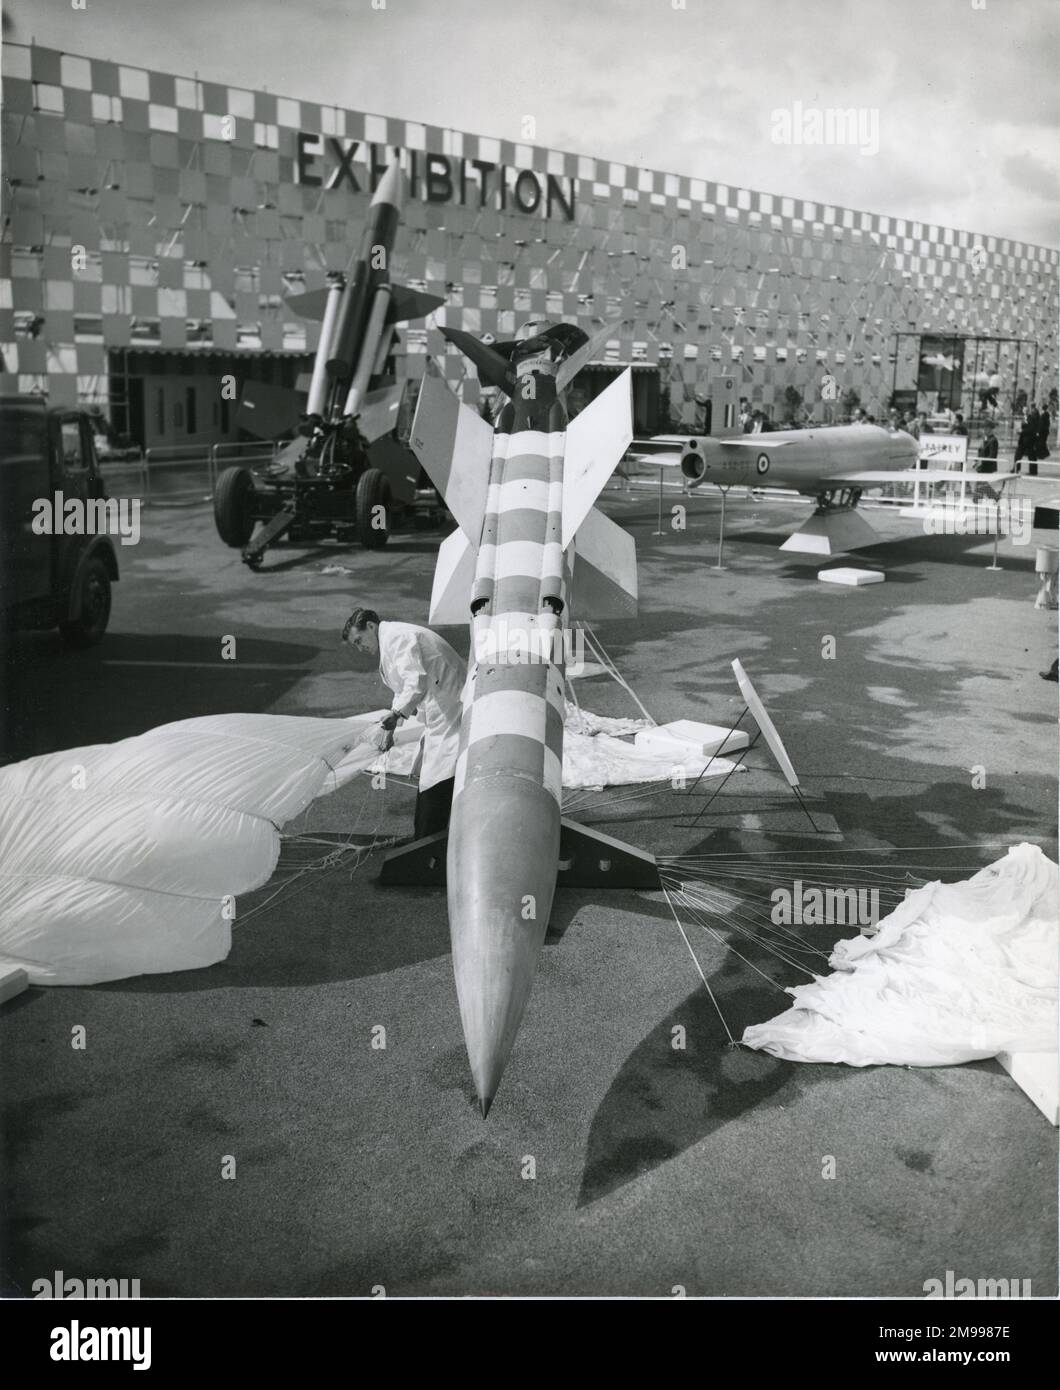 Une fusée d'essai utilisée pour démontrer le système de récupération en parachute du missile guidé surface-air de l'oiseau-tonnerre électrique anglais. 1957 spectacle aérien de Farnborough. Banque D'Images